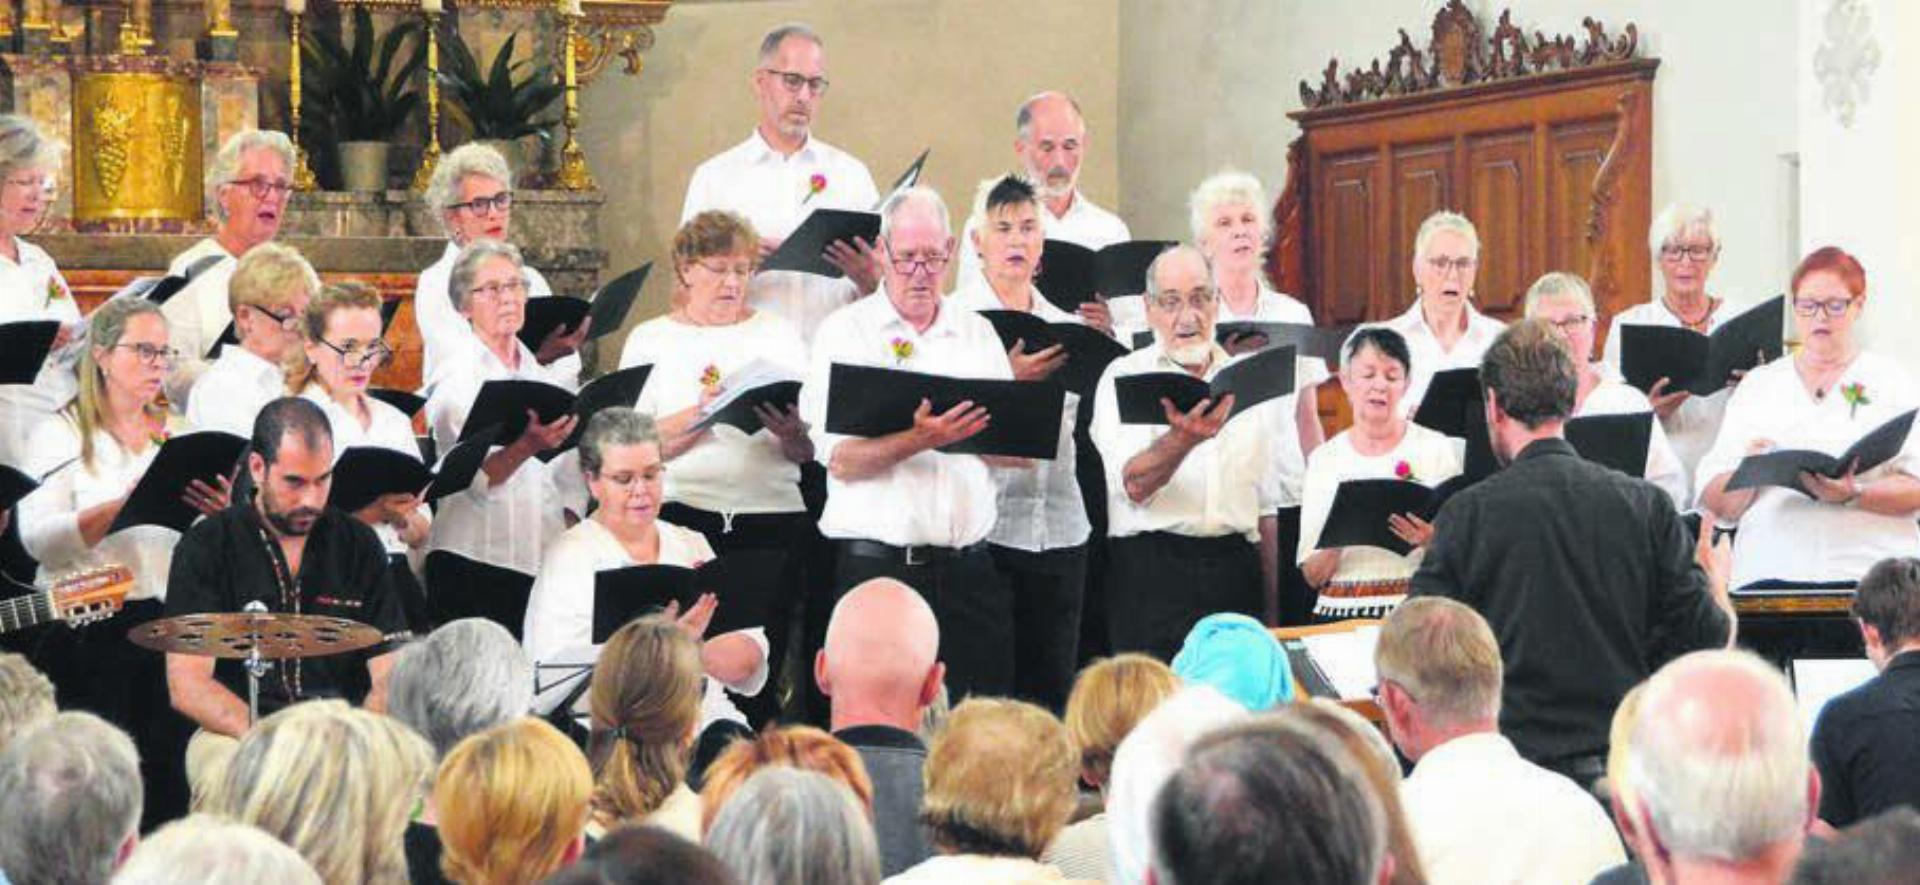 Herausfordernd zu singen war die Messe «Misa Criolla». Dem Kirchenchor Lunkhofen ist das souverän gelungen. Bilder: Celeste Blanc